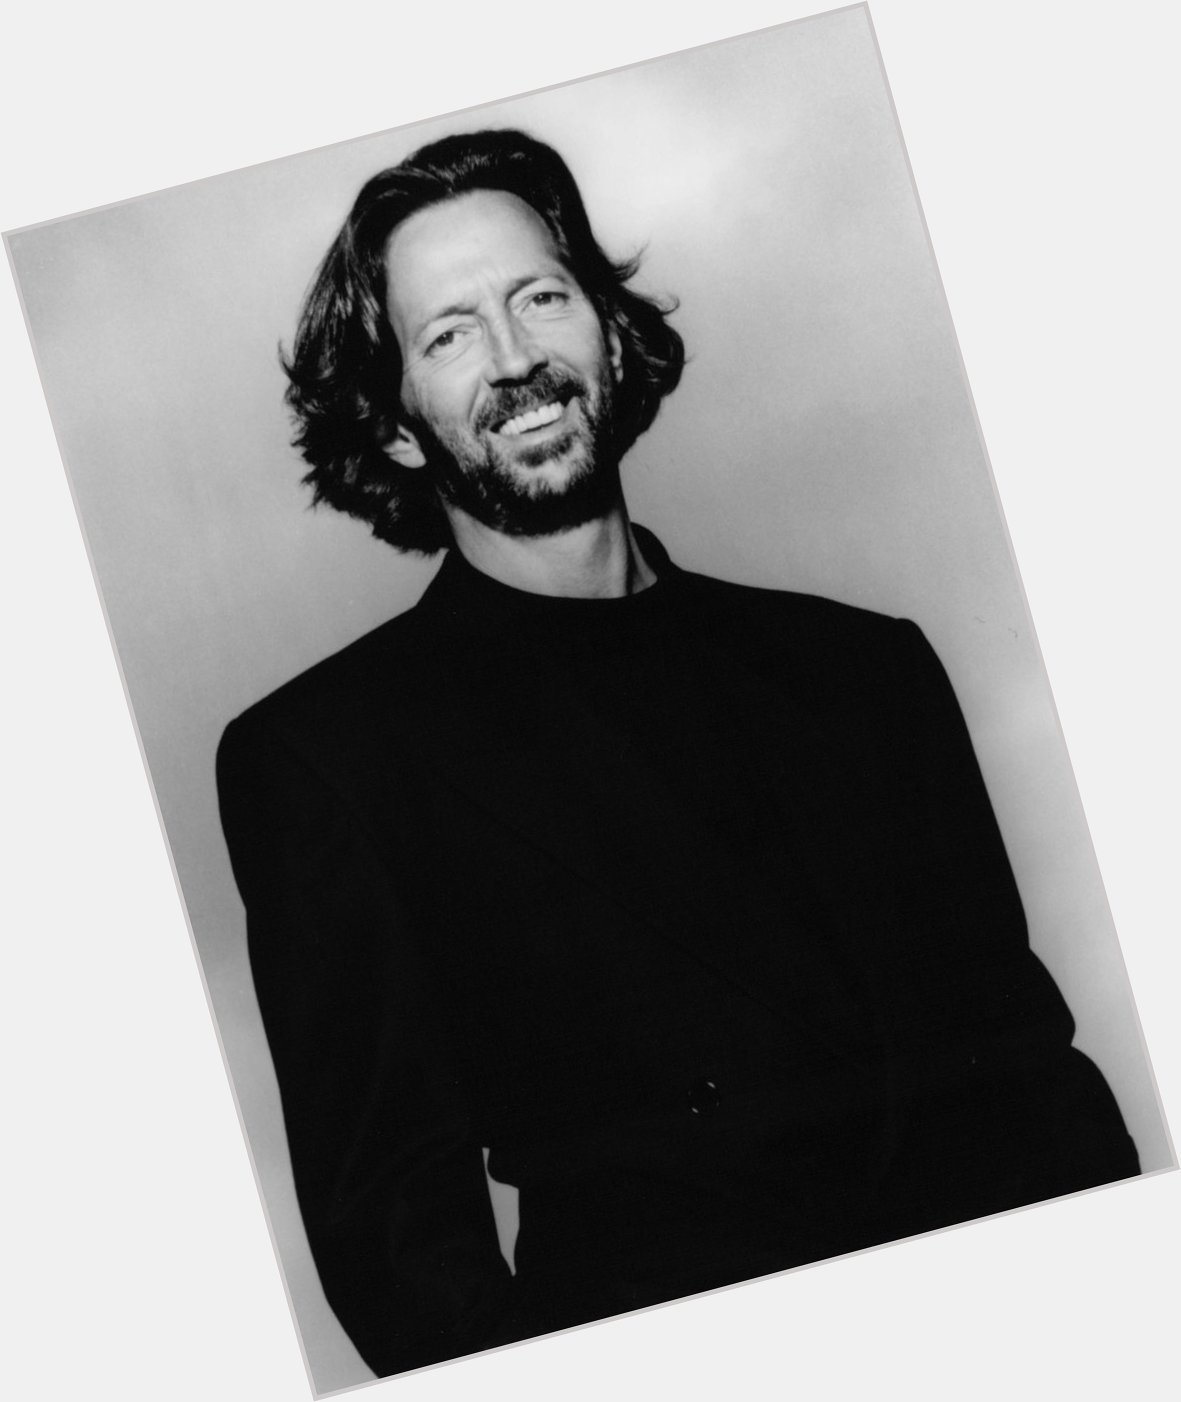 Happy birthday Eric Clapton 77 today 